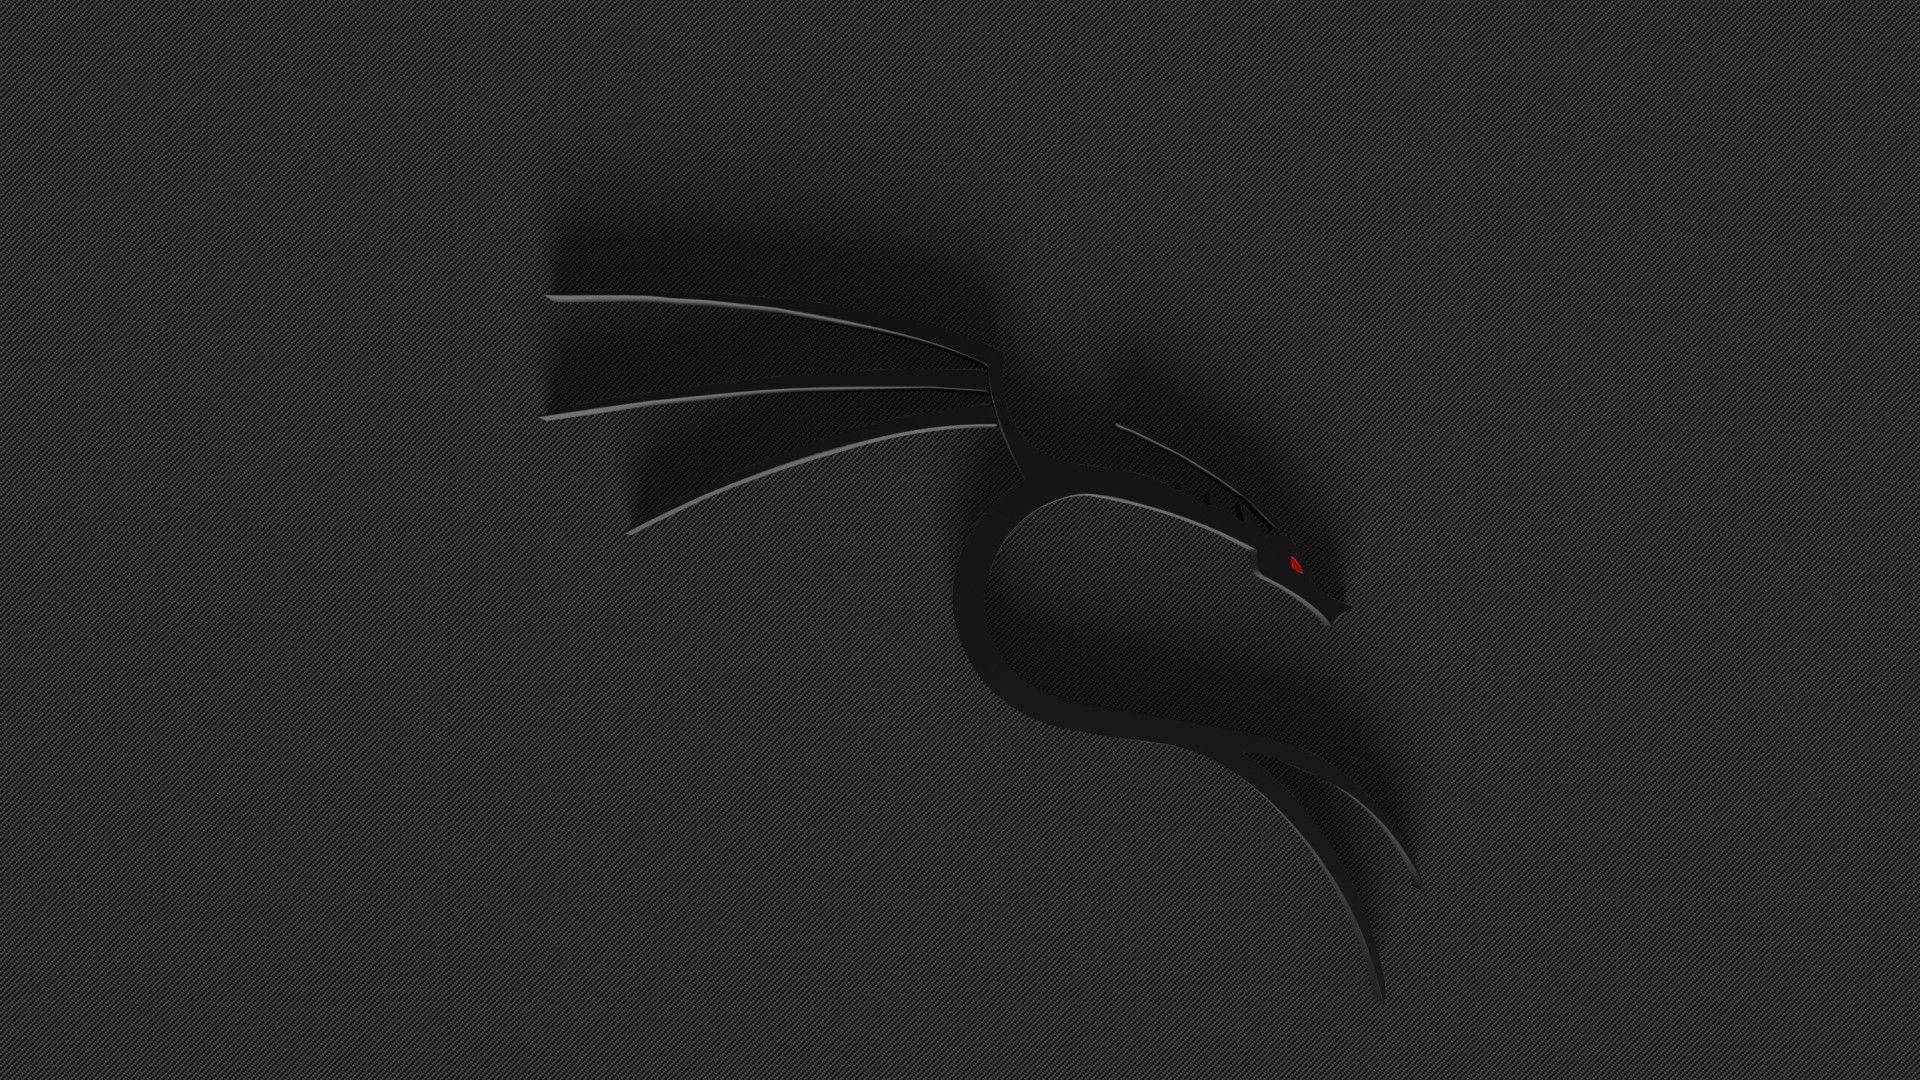 3d Kali Linux Dragon